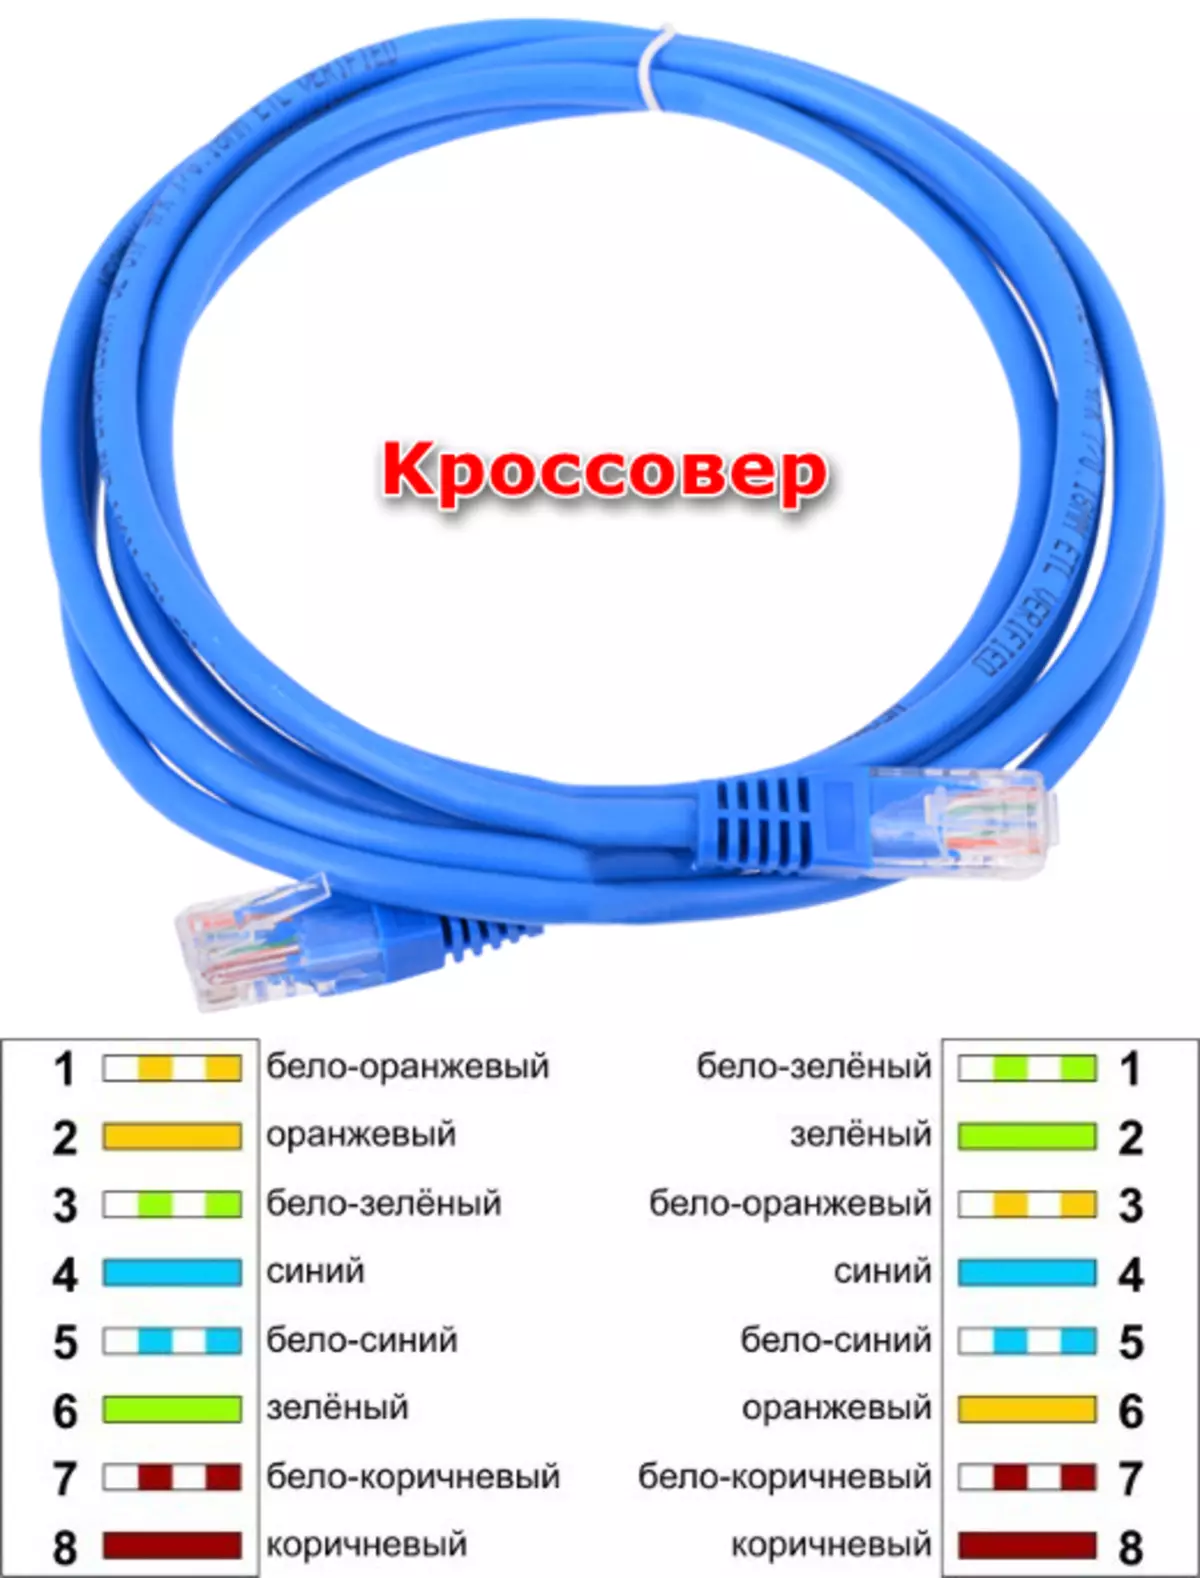 연결 케이블 연결 케이블 2 대의 컴퓨터에서 로컬 네트워크를 만드십시오.